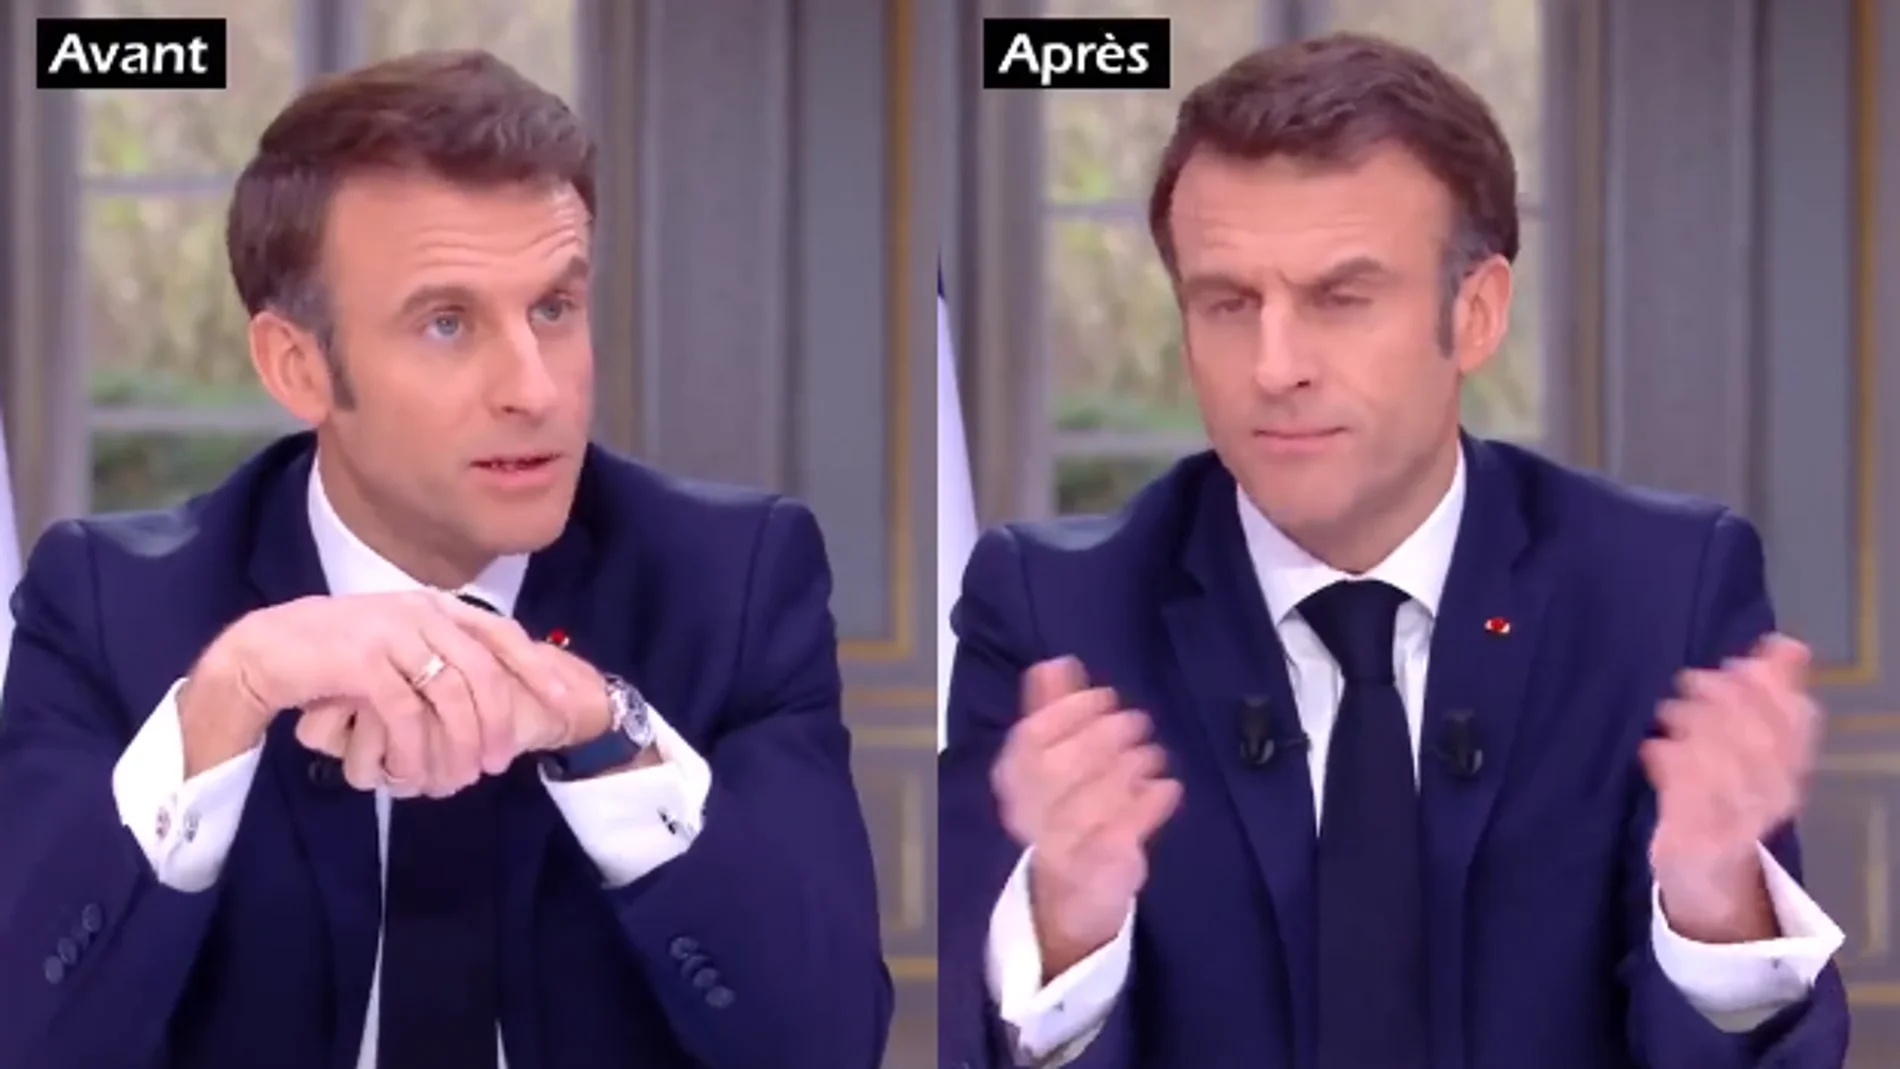 Imagen de Macron con el reloj y sin el reloj tras quitárselo 'disimuladamente'